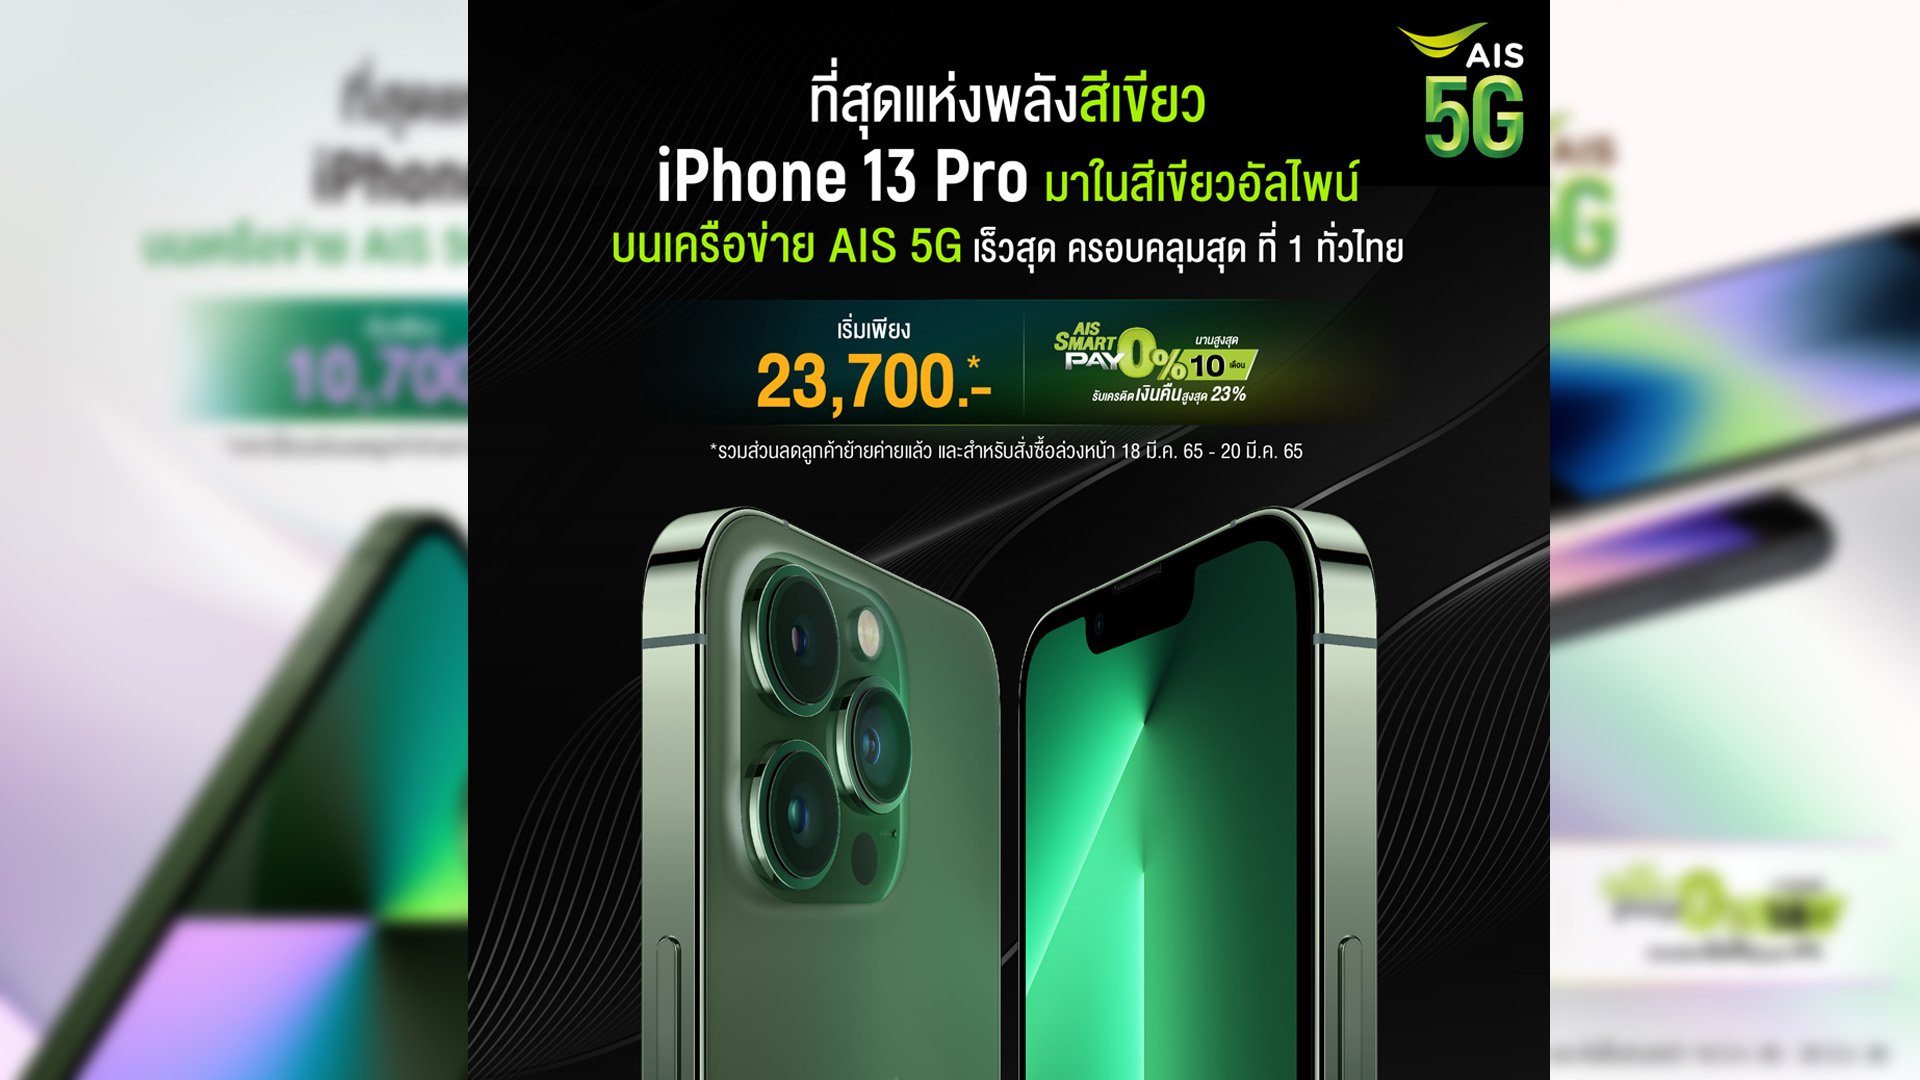 AIS 5G เตรียมวางจำหน่าย iPhone SE iPhone 13 และ iPhone 13 Pro สีเขียวใหม่